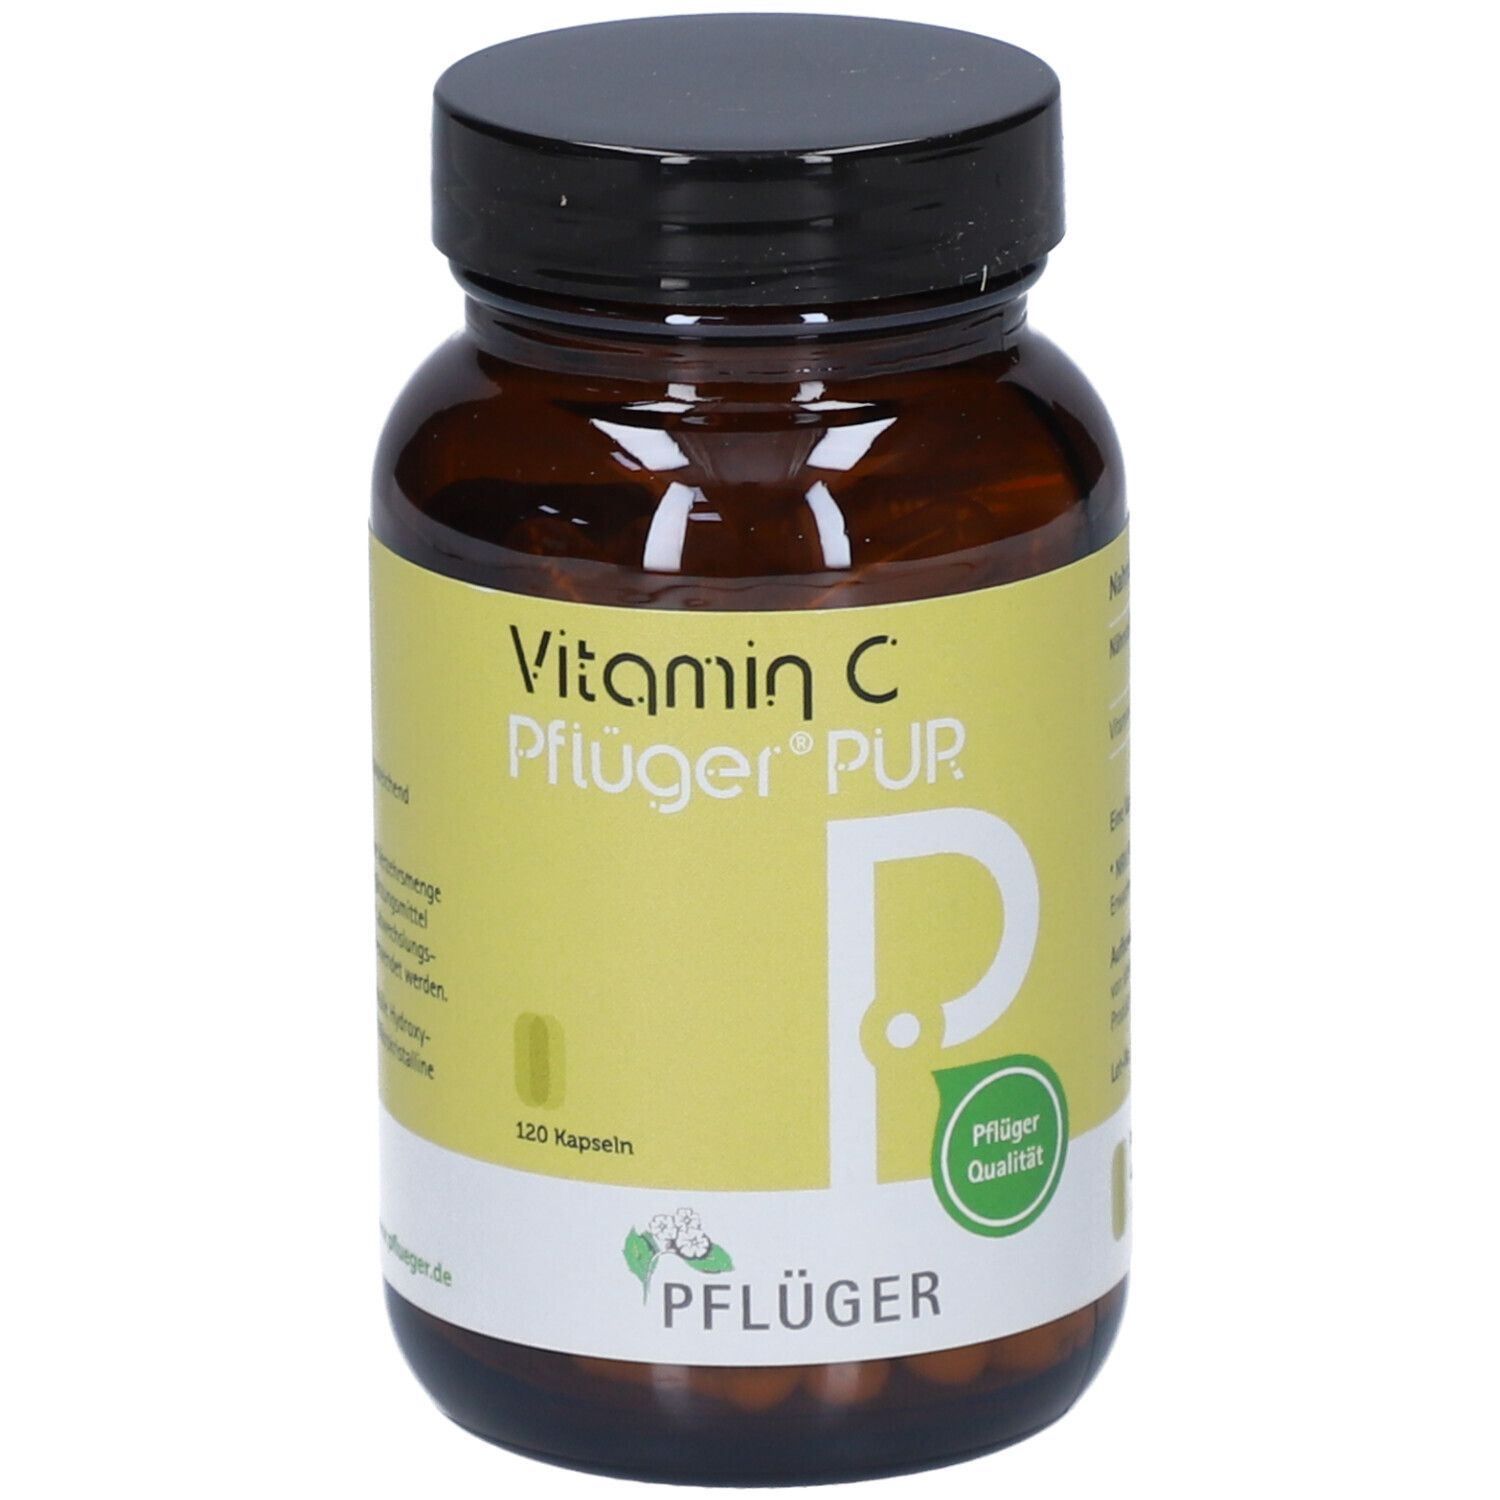 Vitamin C Pflüger® PUR